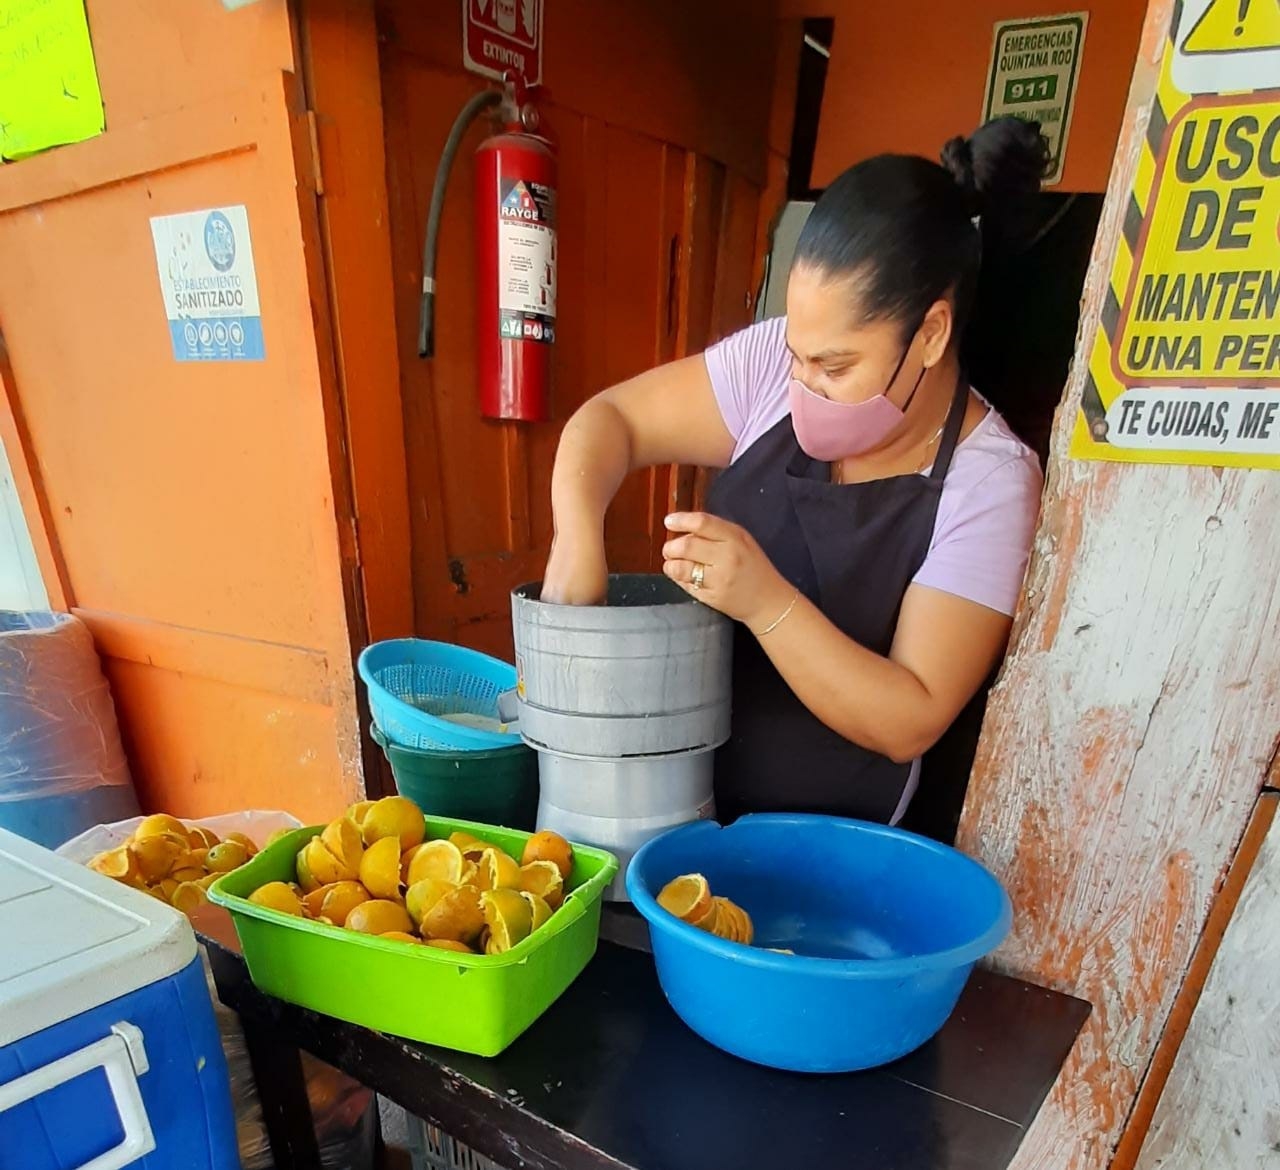 Tras contagiarse de COVID, pacientes en Playa del Carmen modifican su alimentación